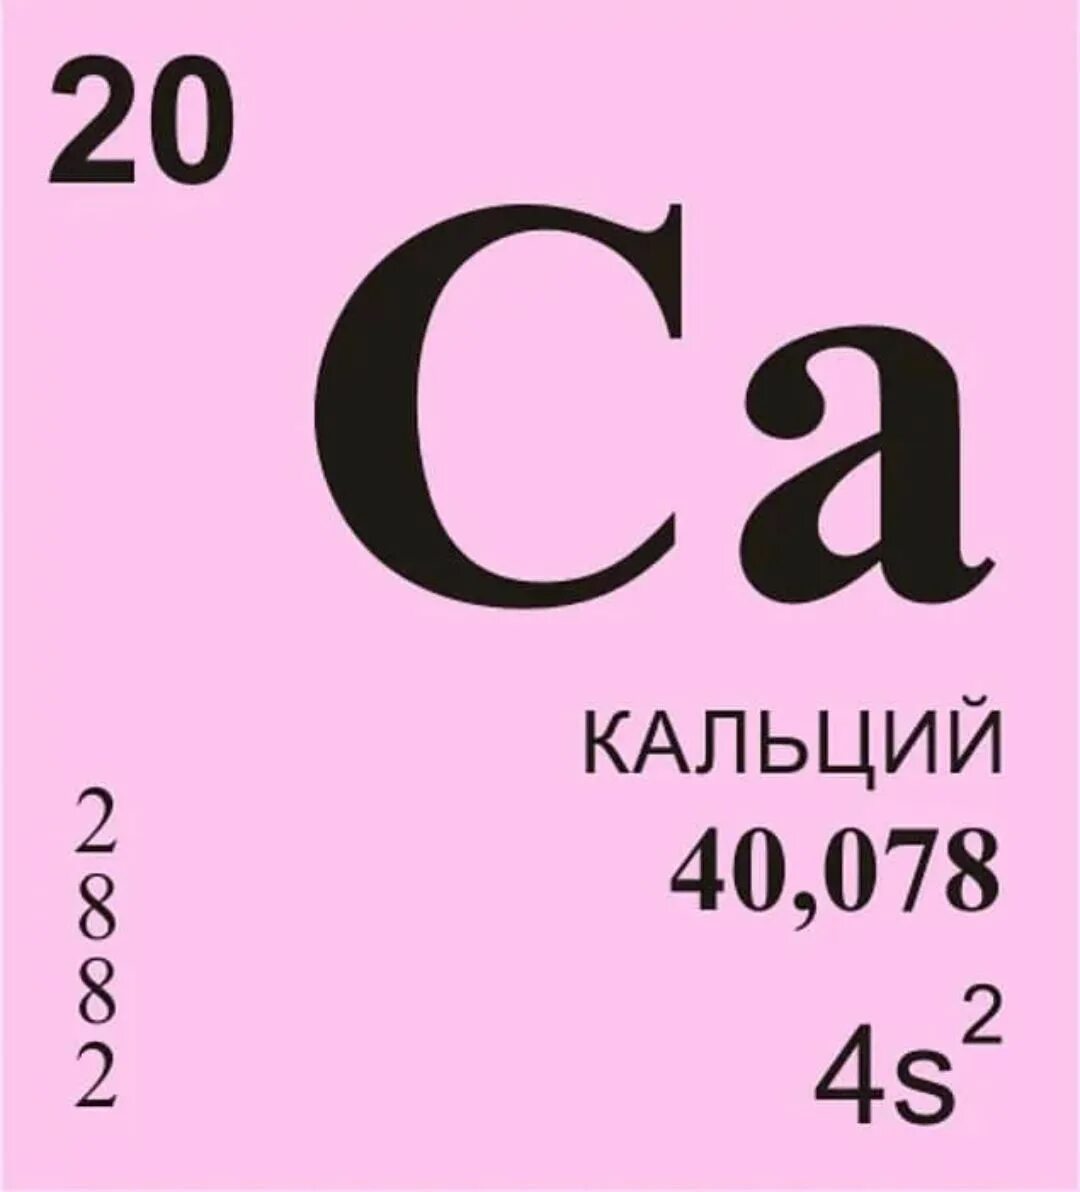 Кальций в таблице Менделеев. Химический элемент кальций карточка. Химический элемент кальций в таблице Менделеева. Кальций кальций хим элемент.